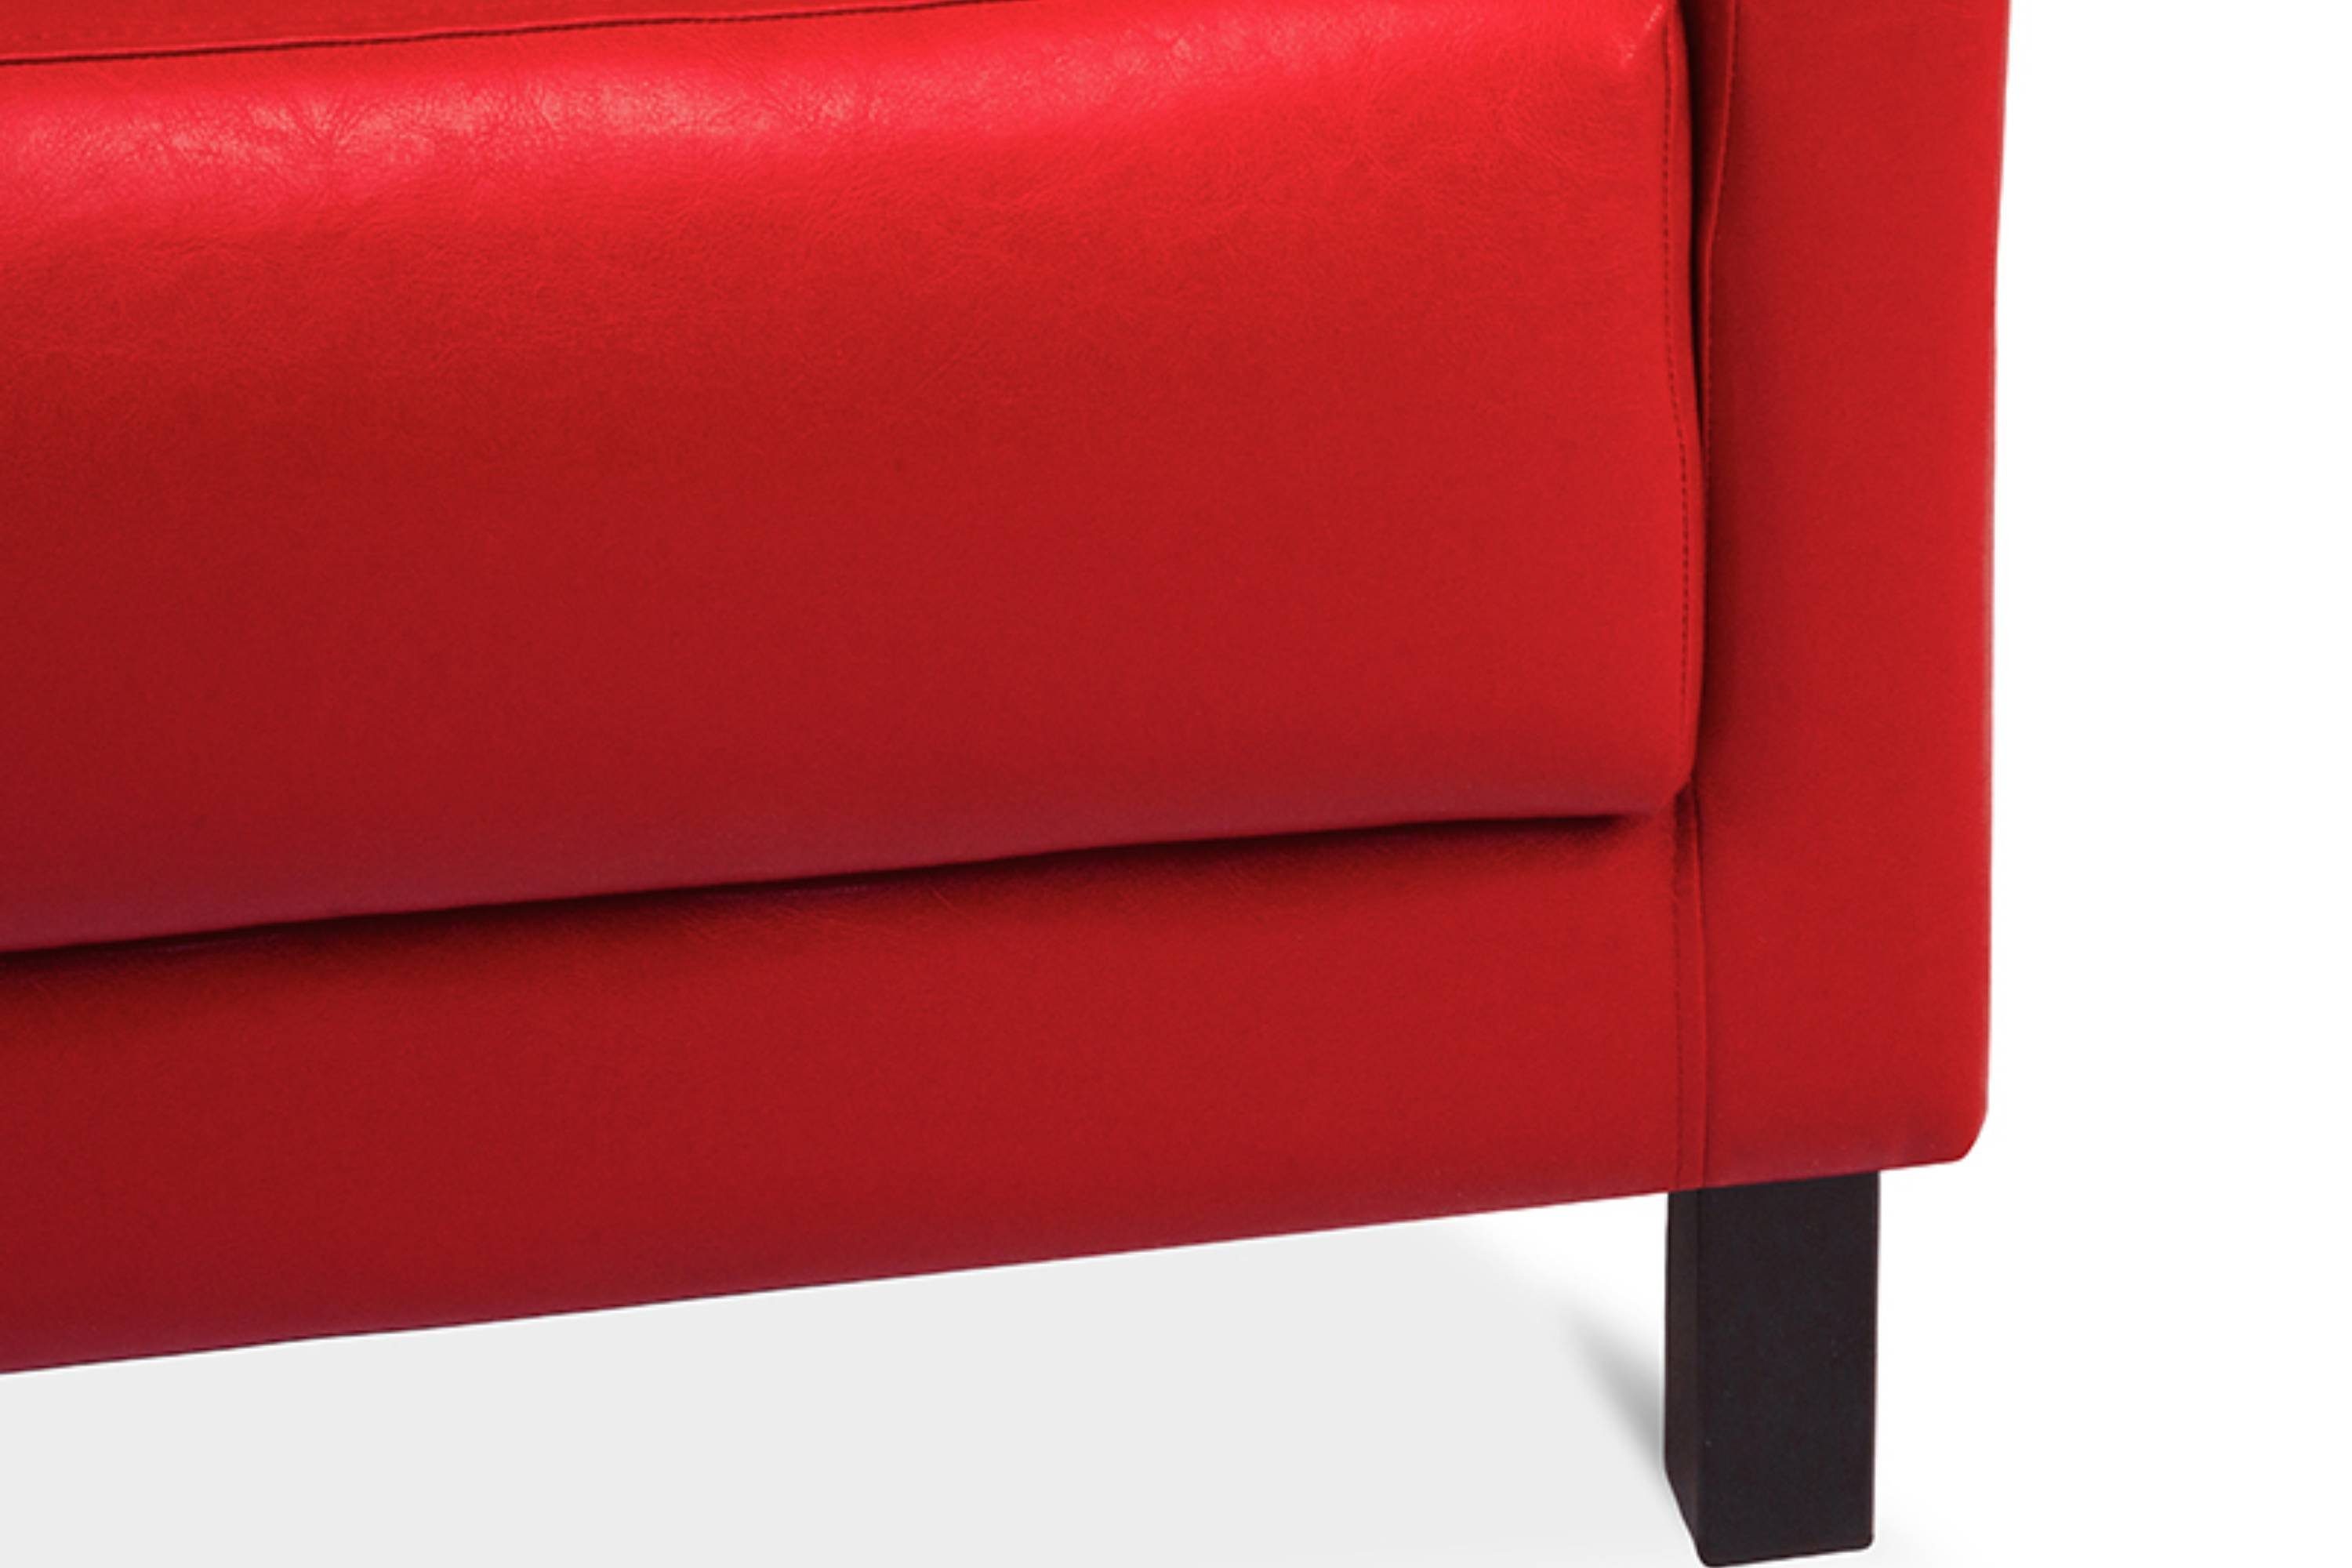 Personen, rot Konsimo | hohe Massivholzbeine ESPECTO Sofa weiche Kunstleder, Rückenlehne, Sitzfläche hohe 2 und 2-Sitzer rot